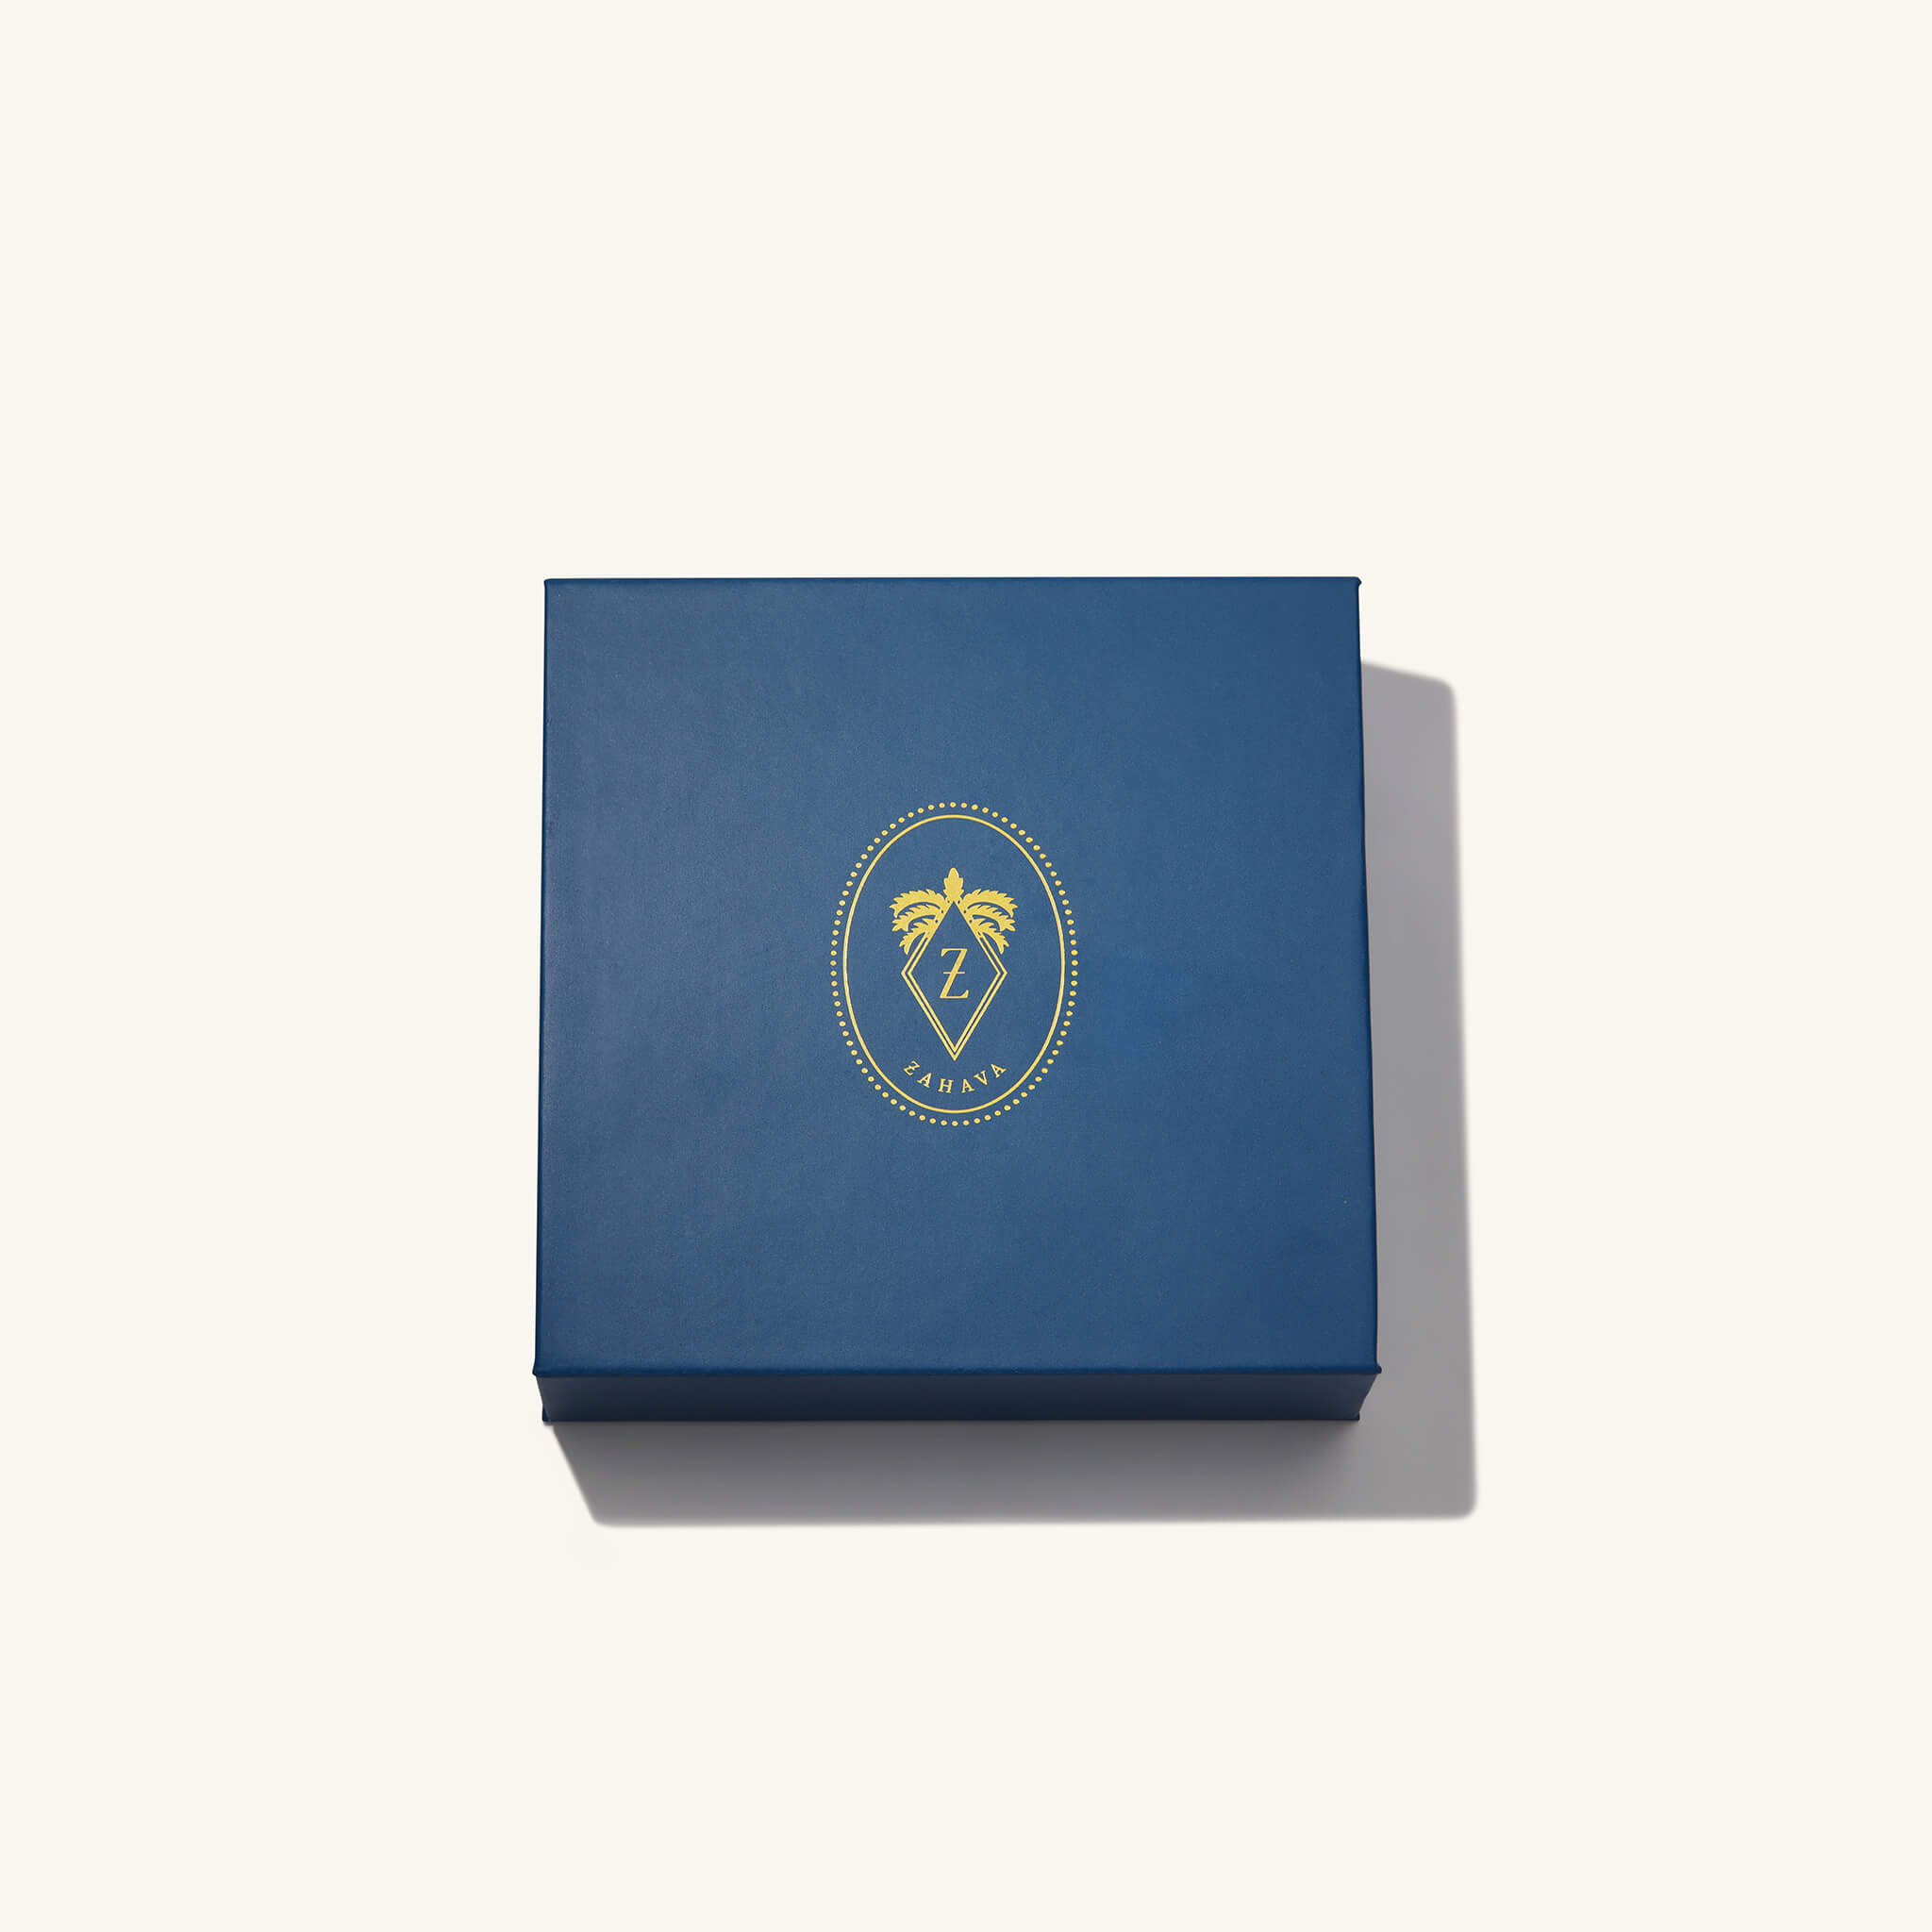 Blue Zahava Shipping Box with Gold logo